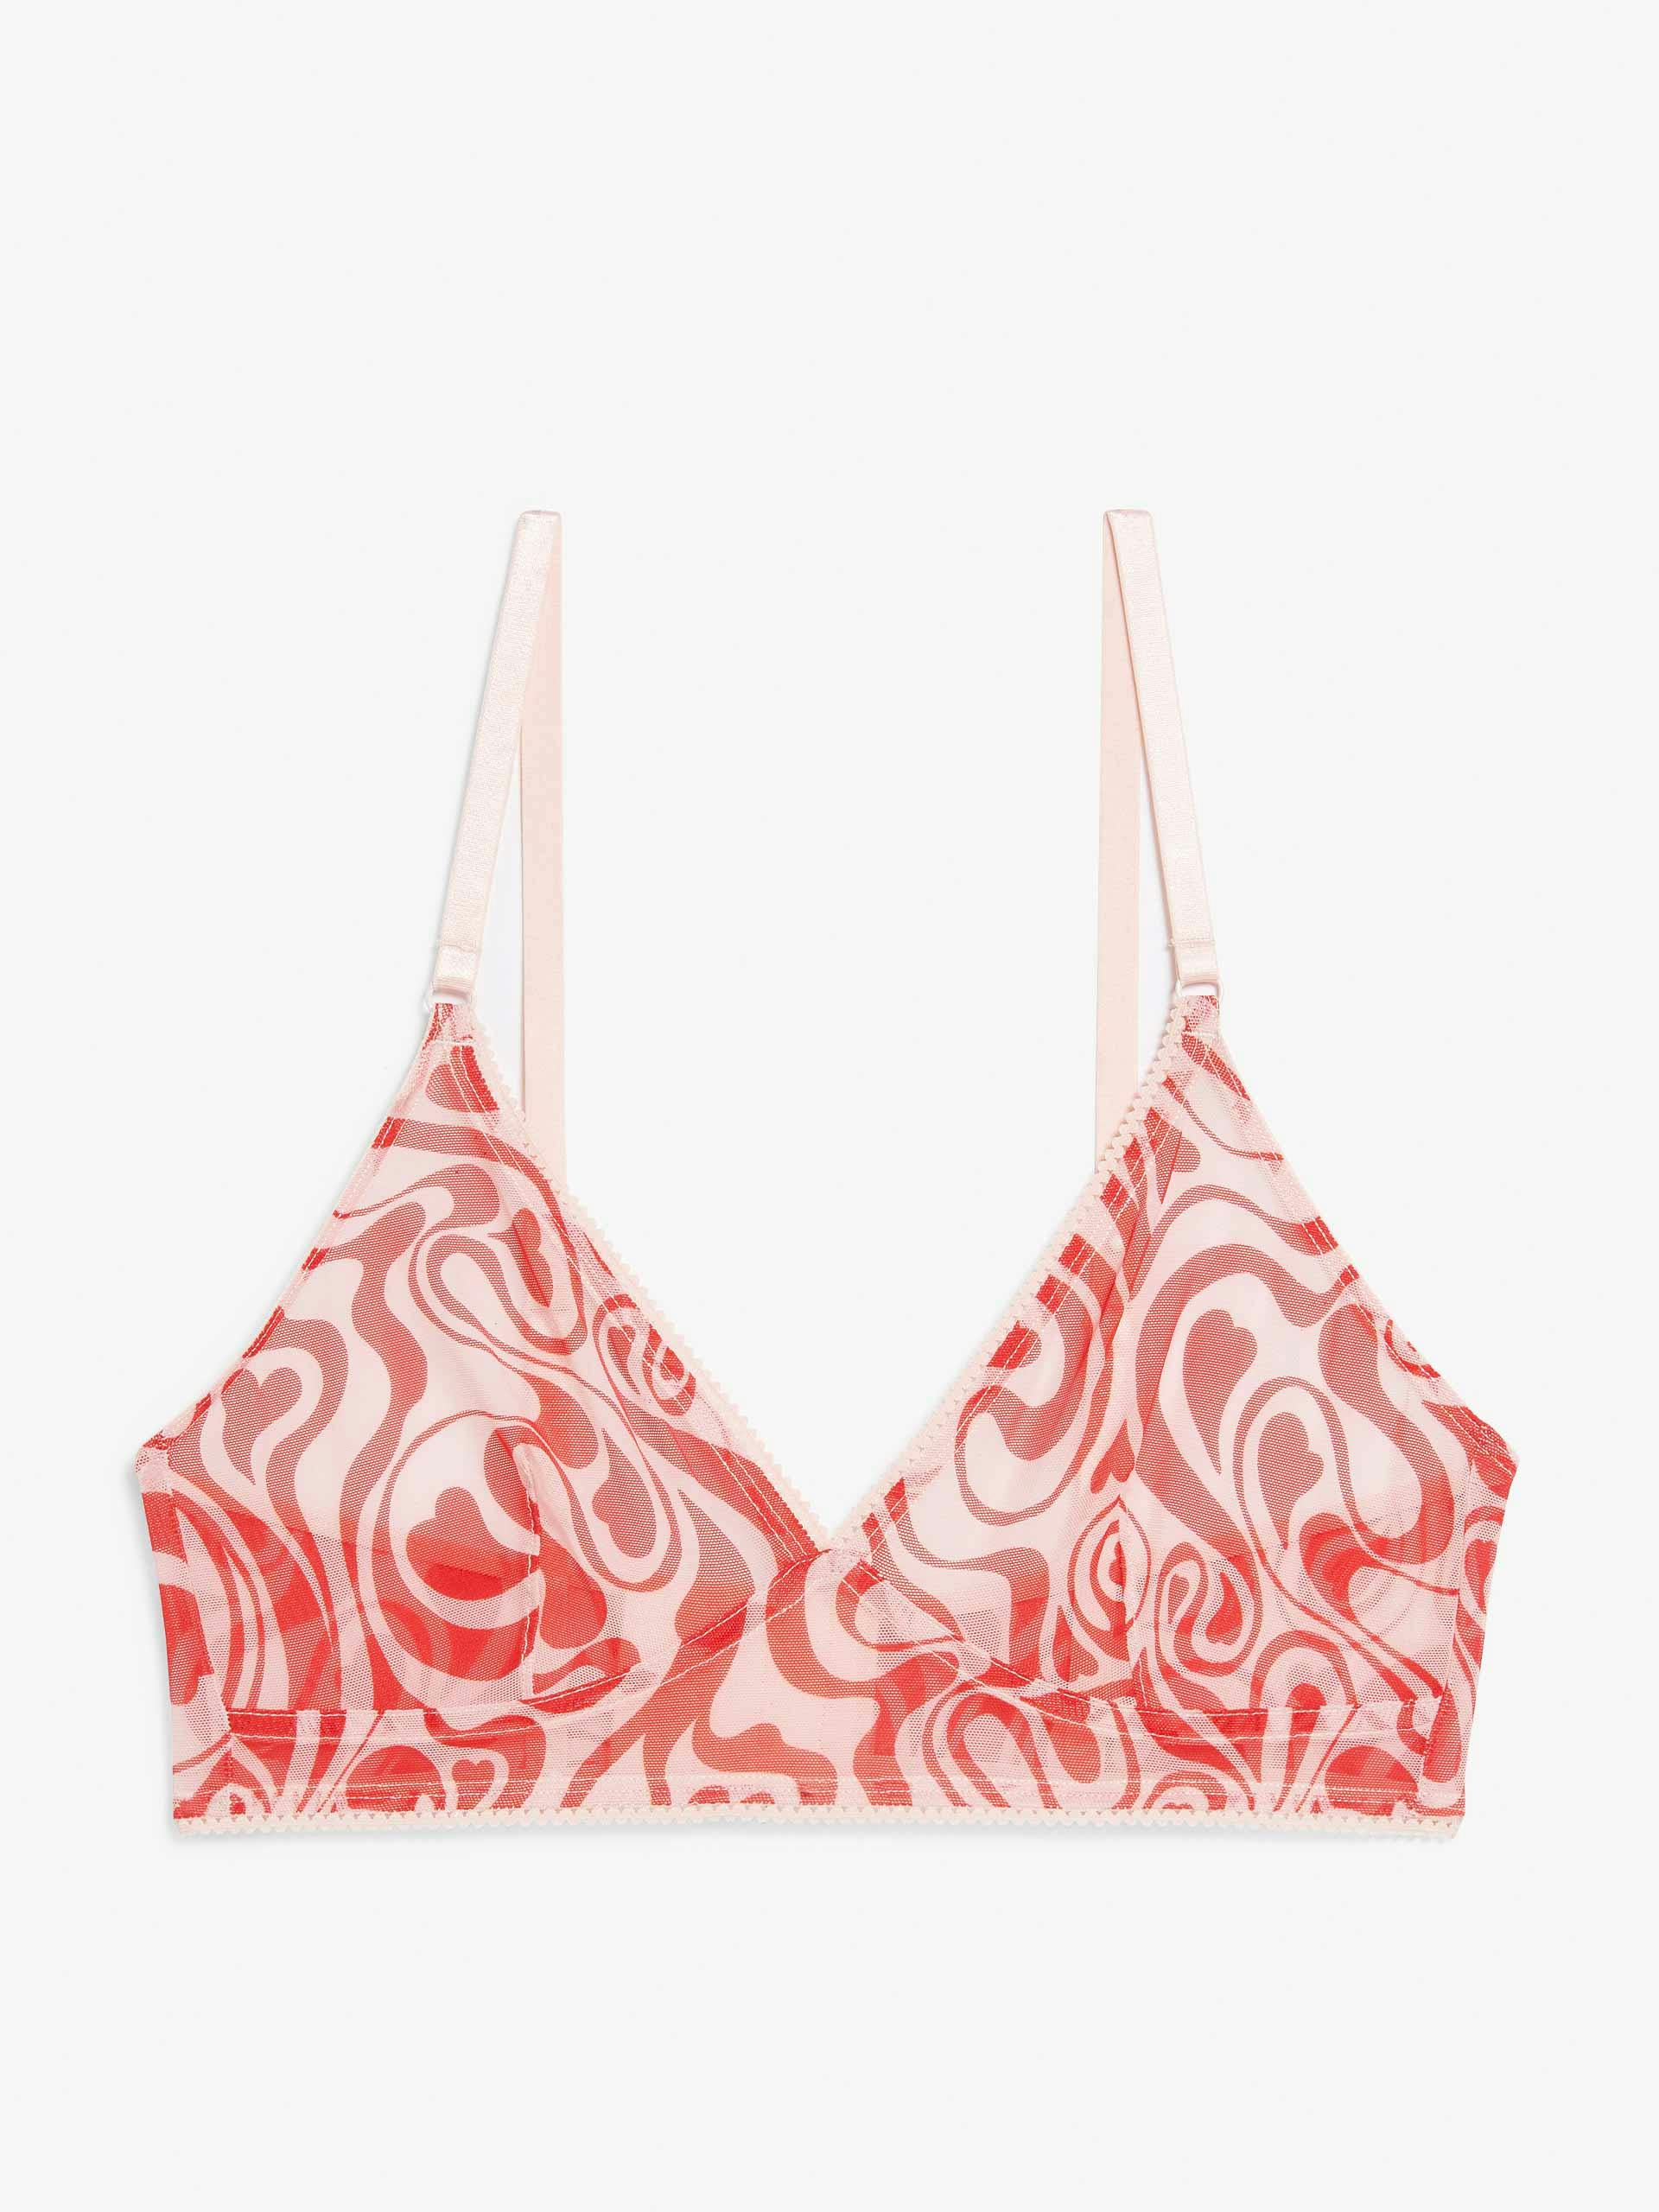 Swirly heart triangle mesh bra